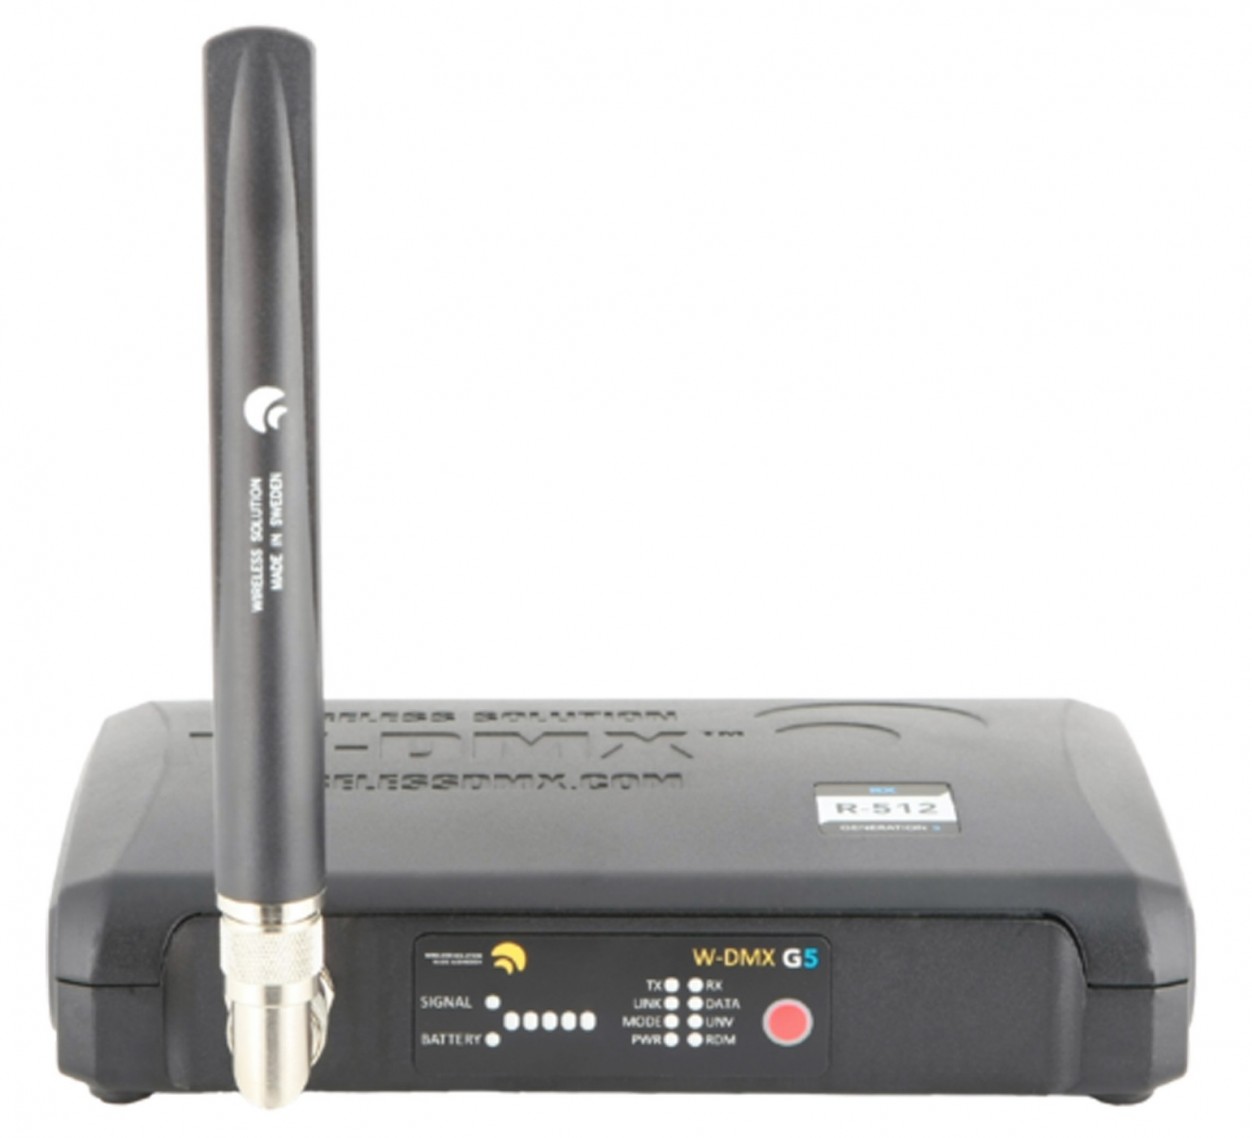 Wireless Solution BlackBox R-512 G5 приёмник 512 каналов DMX с возможностью расширения до 1024 каналов в режиме Double-Up